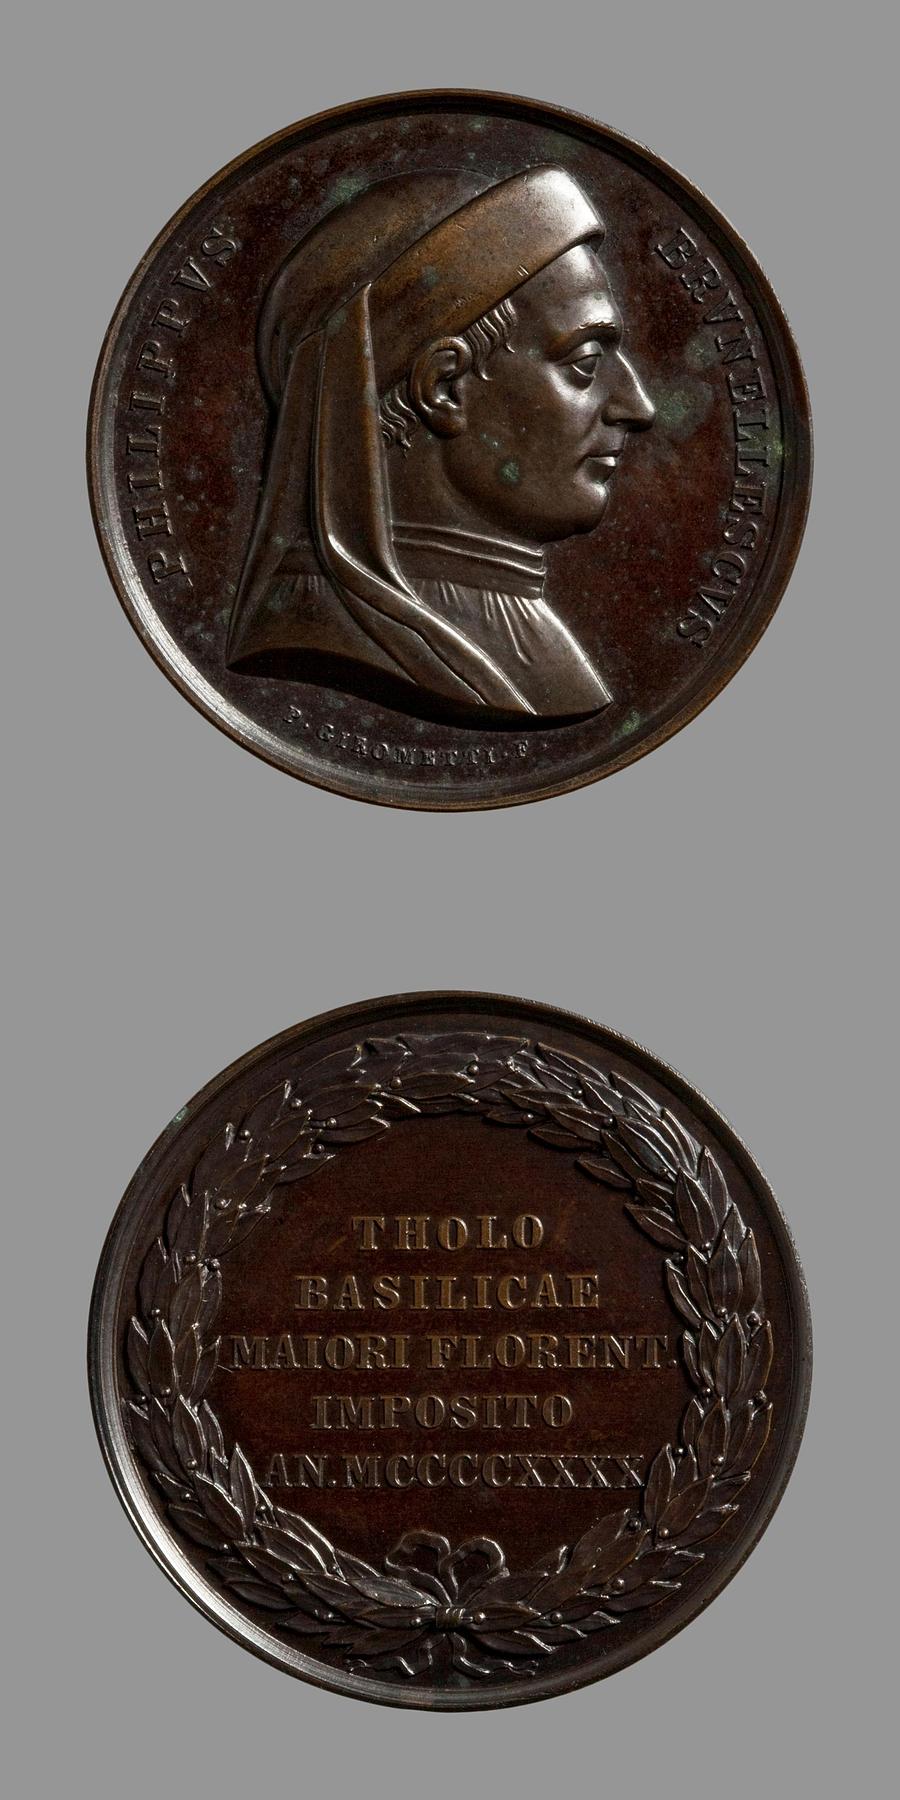 Medaljens forside: Arkitekten Filippo Brunelleschi. Medaljens bagside: Laurbærkrans med inskription, F83